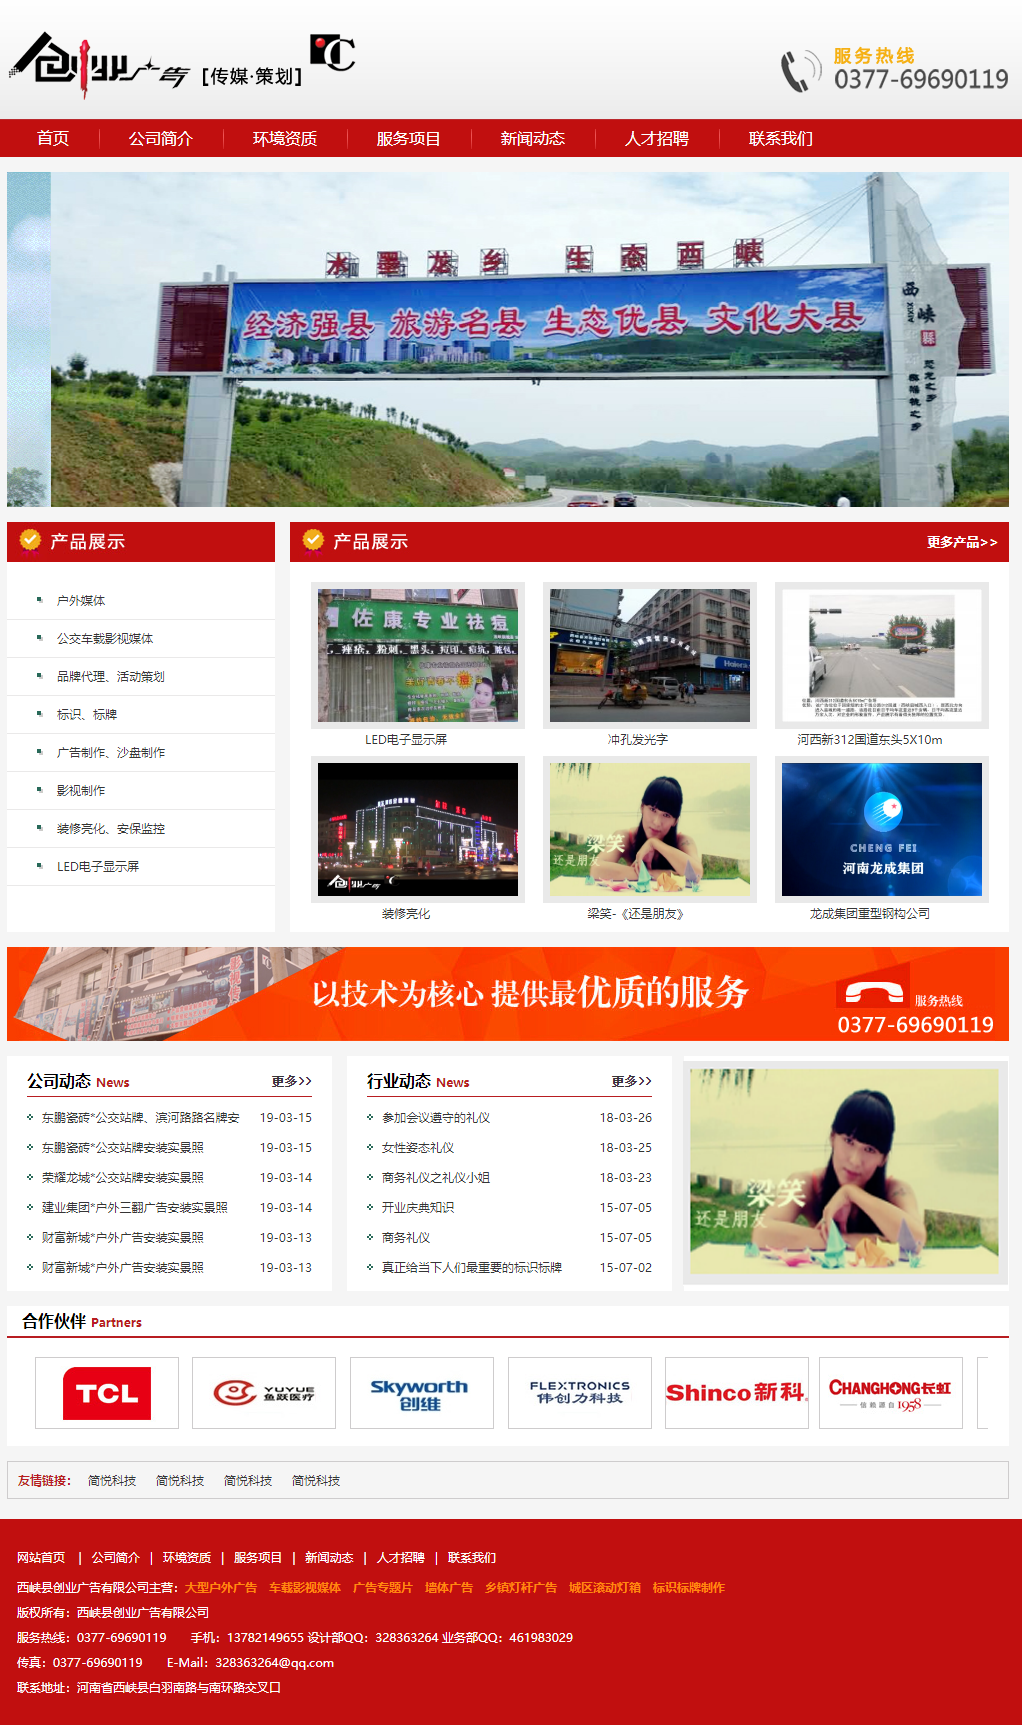 西峡县创业广告有限公司.png